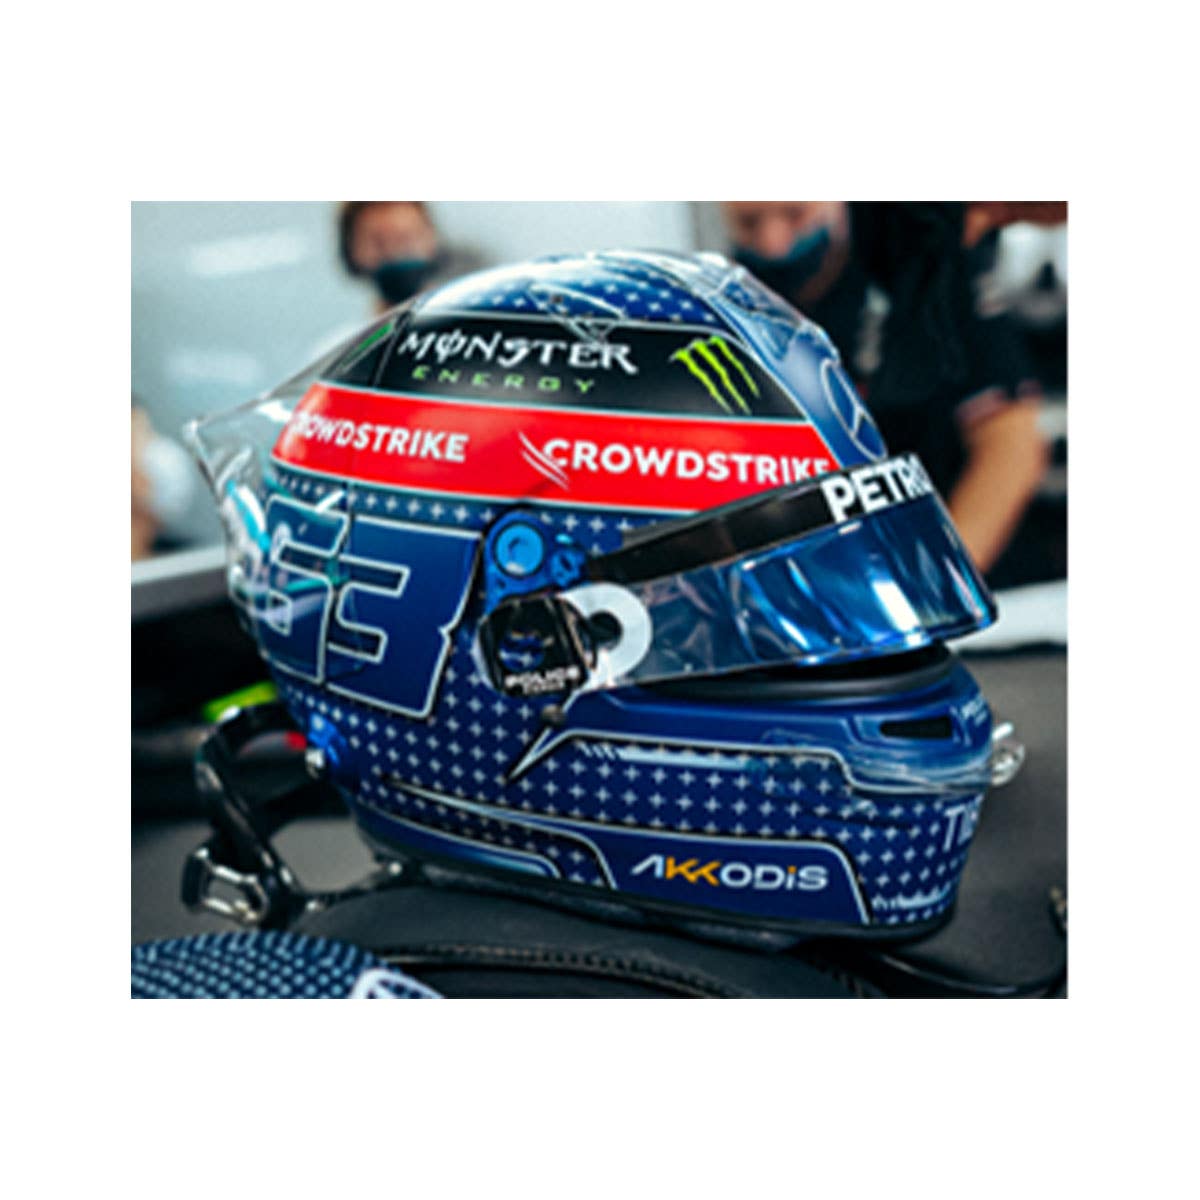 Mercedes-AMG - Japanese GP 2022 - George Russell - 1:5 Scale Resin Model Helmet